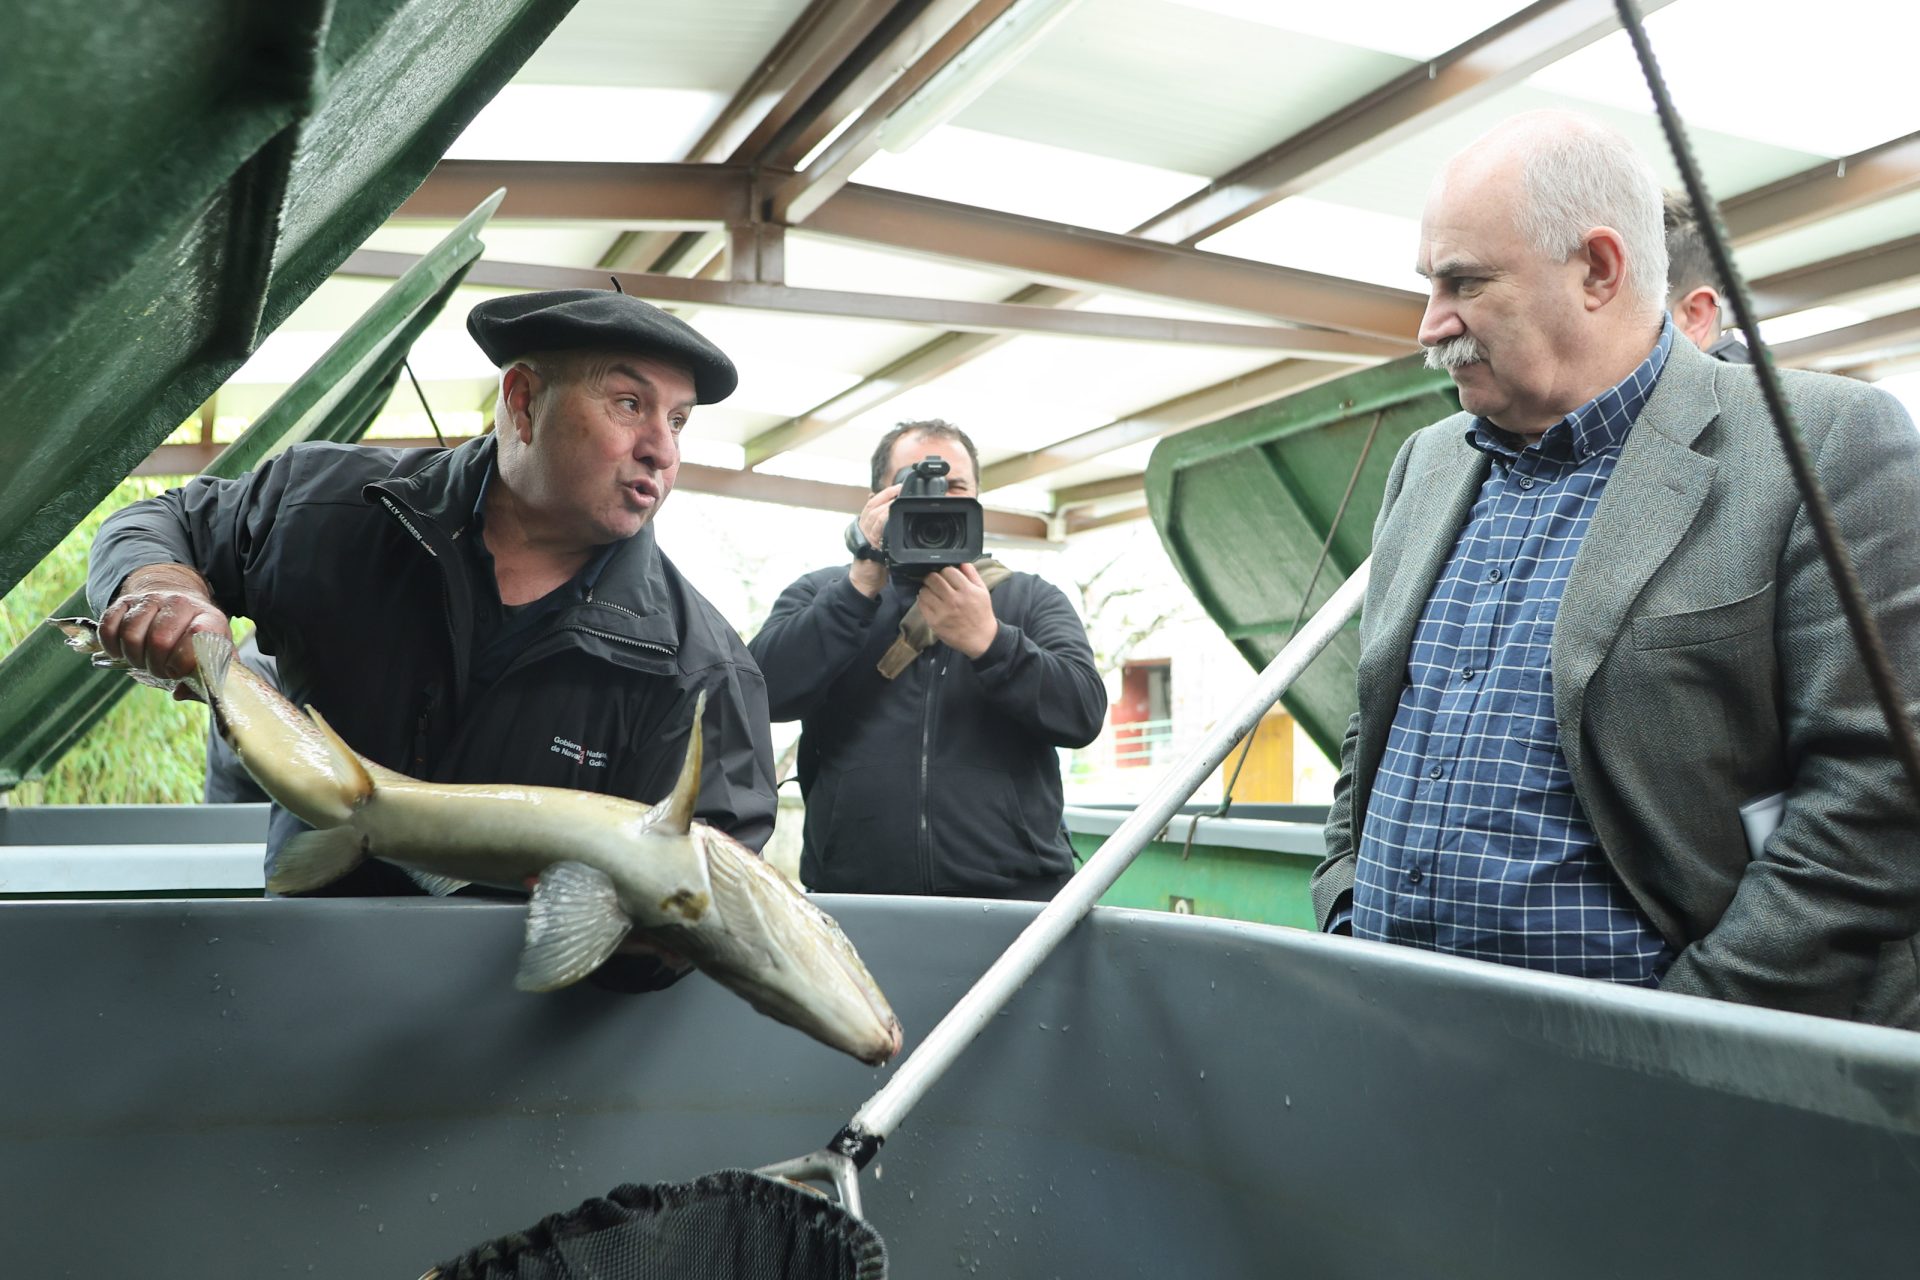 El consejero navarro Aierdi ha conocido, con el técnico Gabriel Salaberri, en la piscifactoría de Oronoz el proceso de la producción de salmón. © Gobierno de Navarra